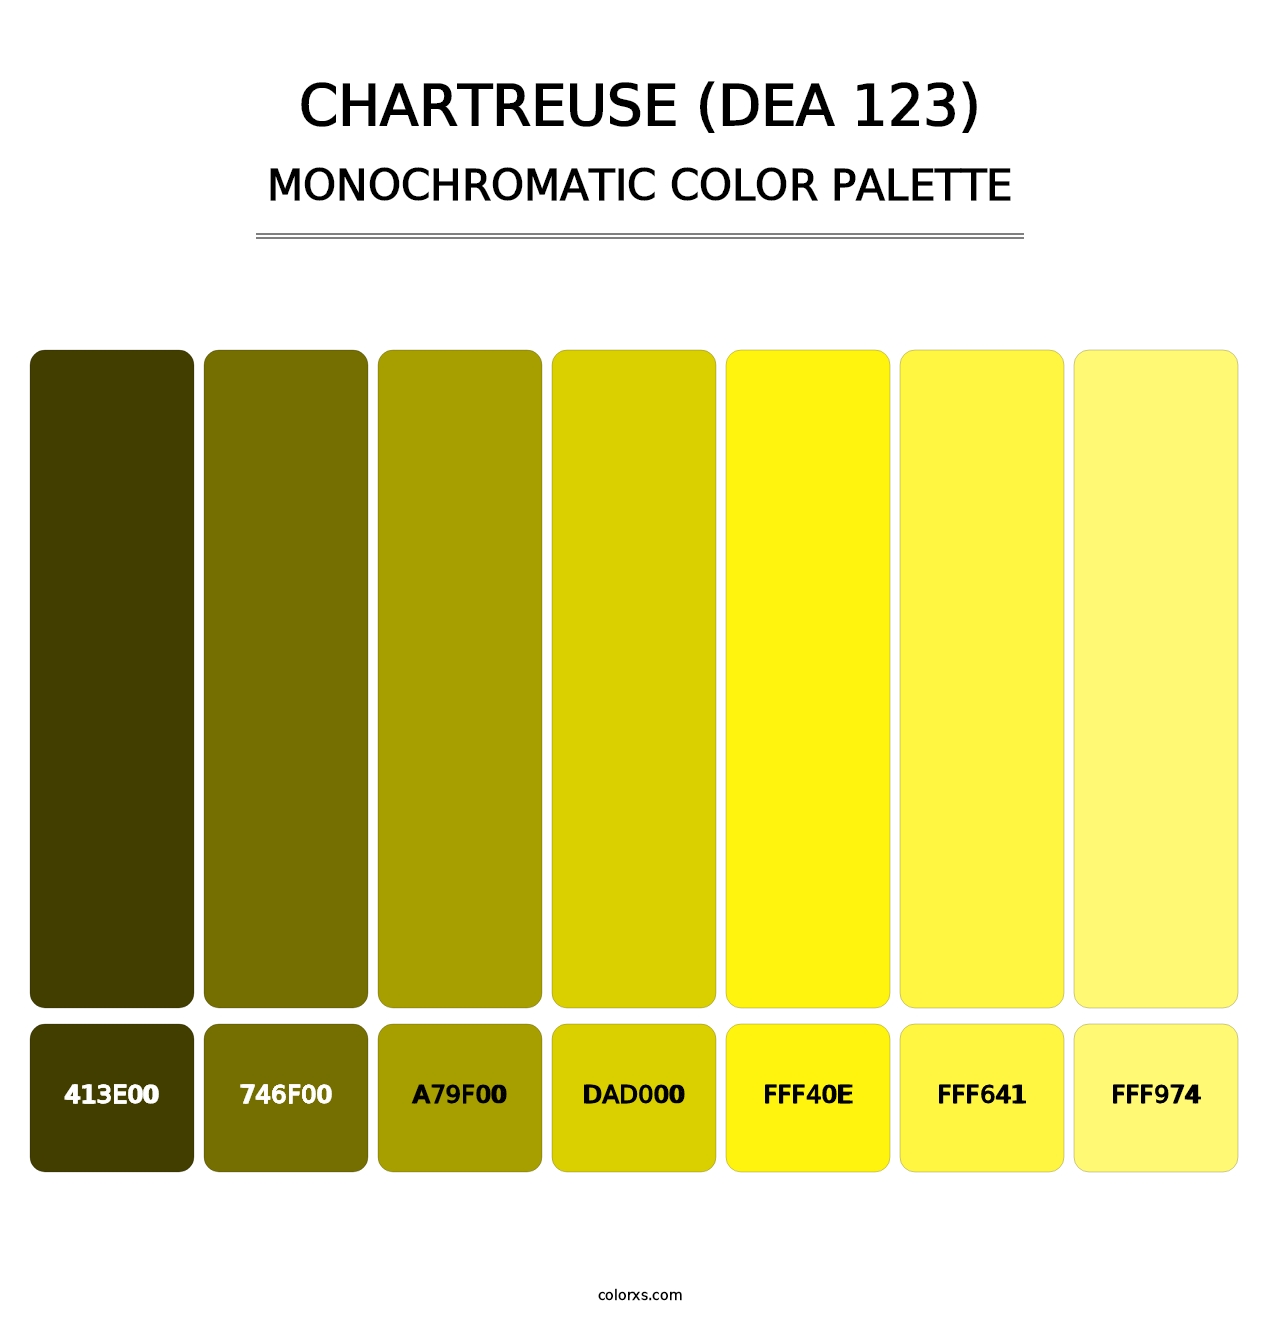 Chartreuse (DEA 123) - Monochromatic Color Palette